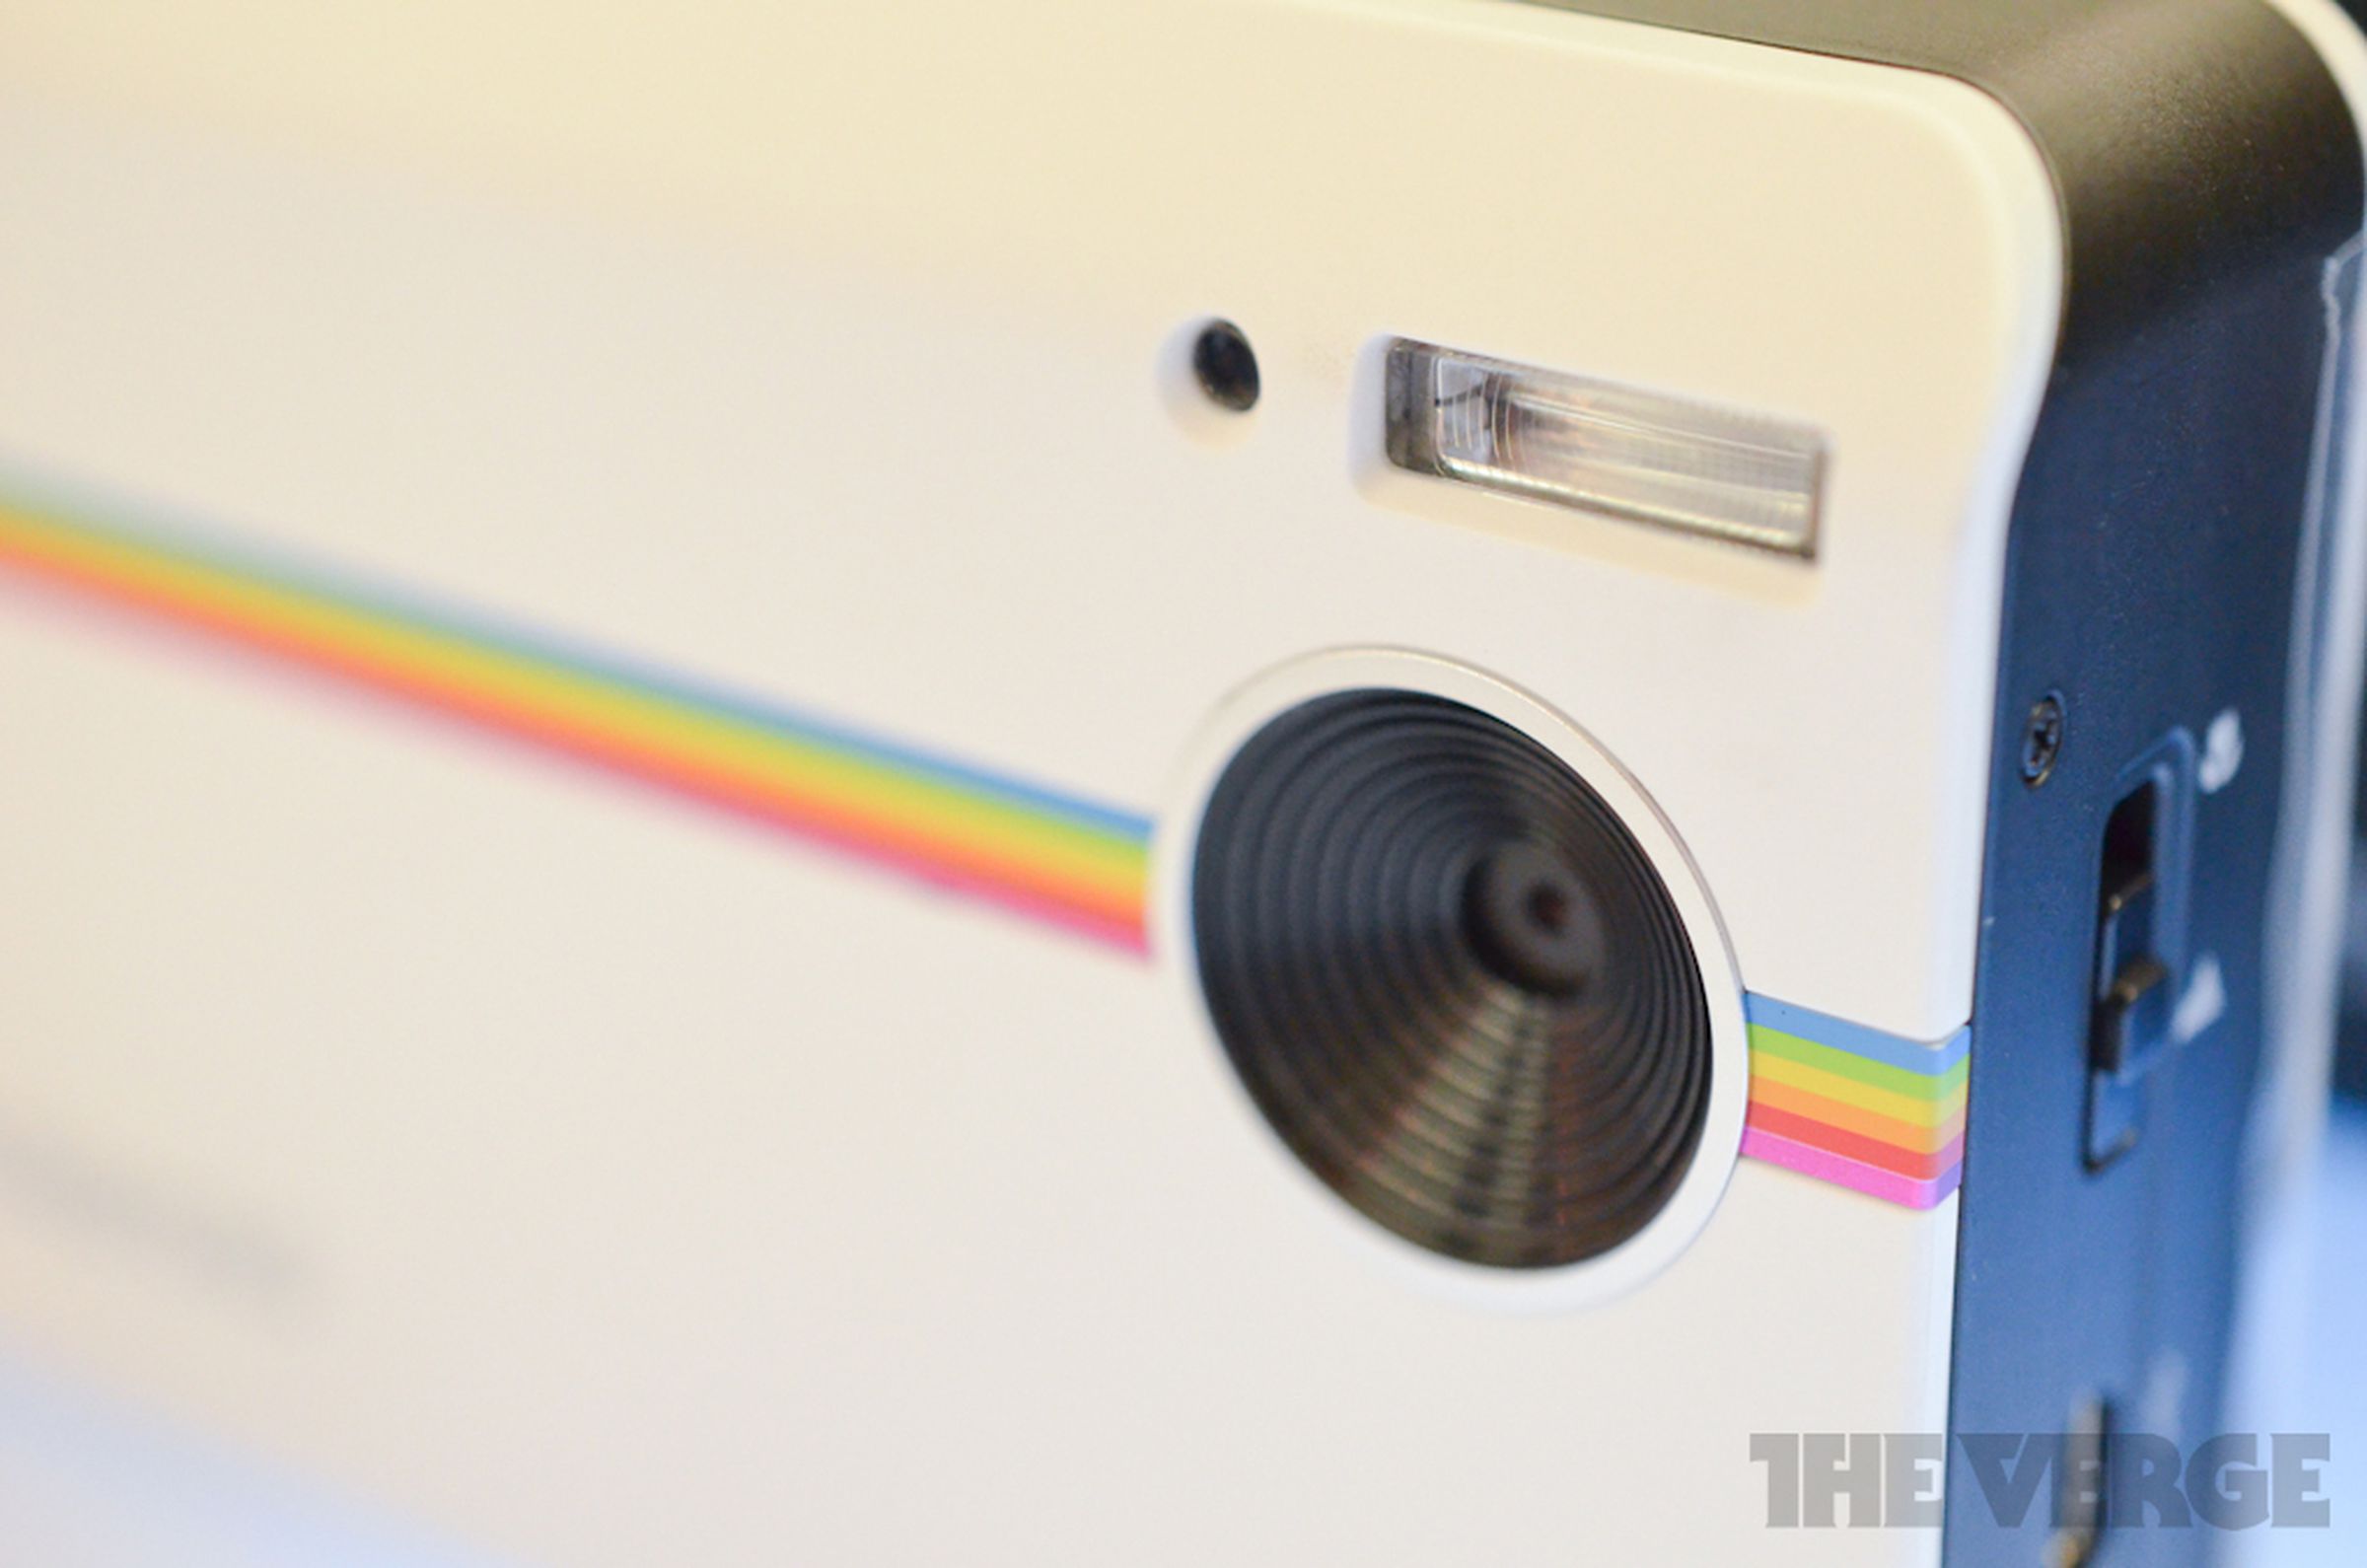 Polaroid Z2300 hands-on photos